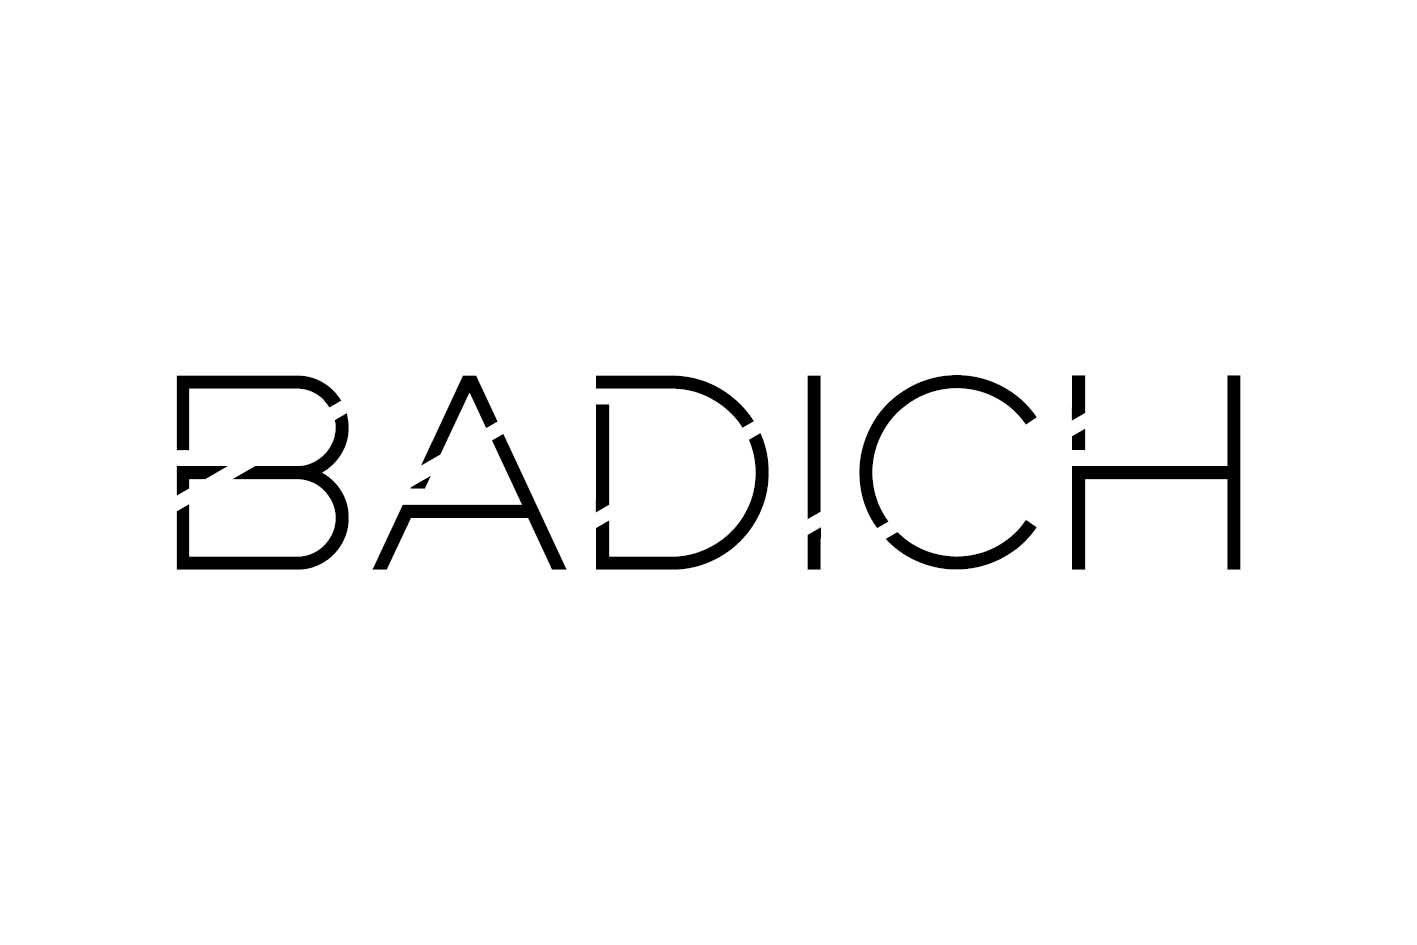 Badich